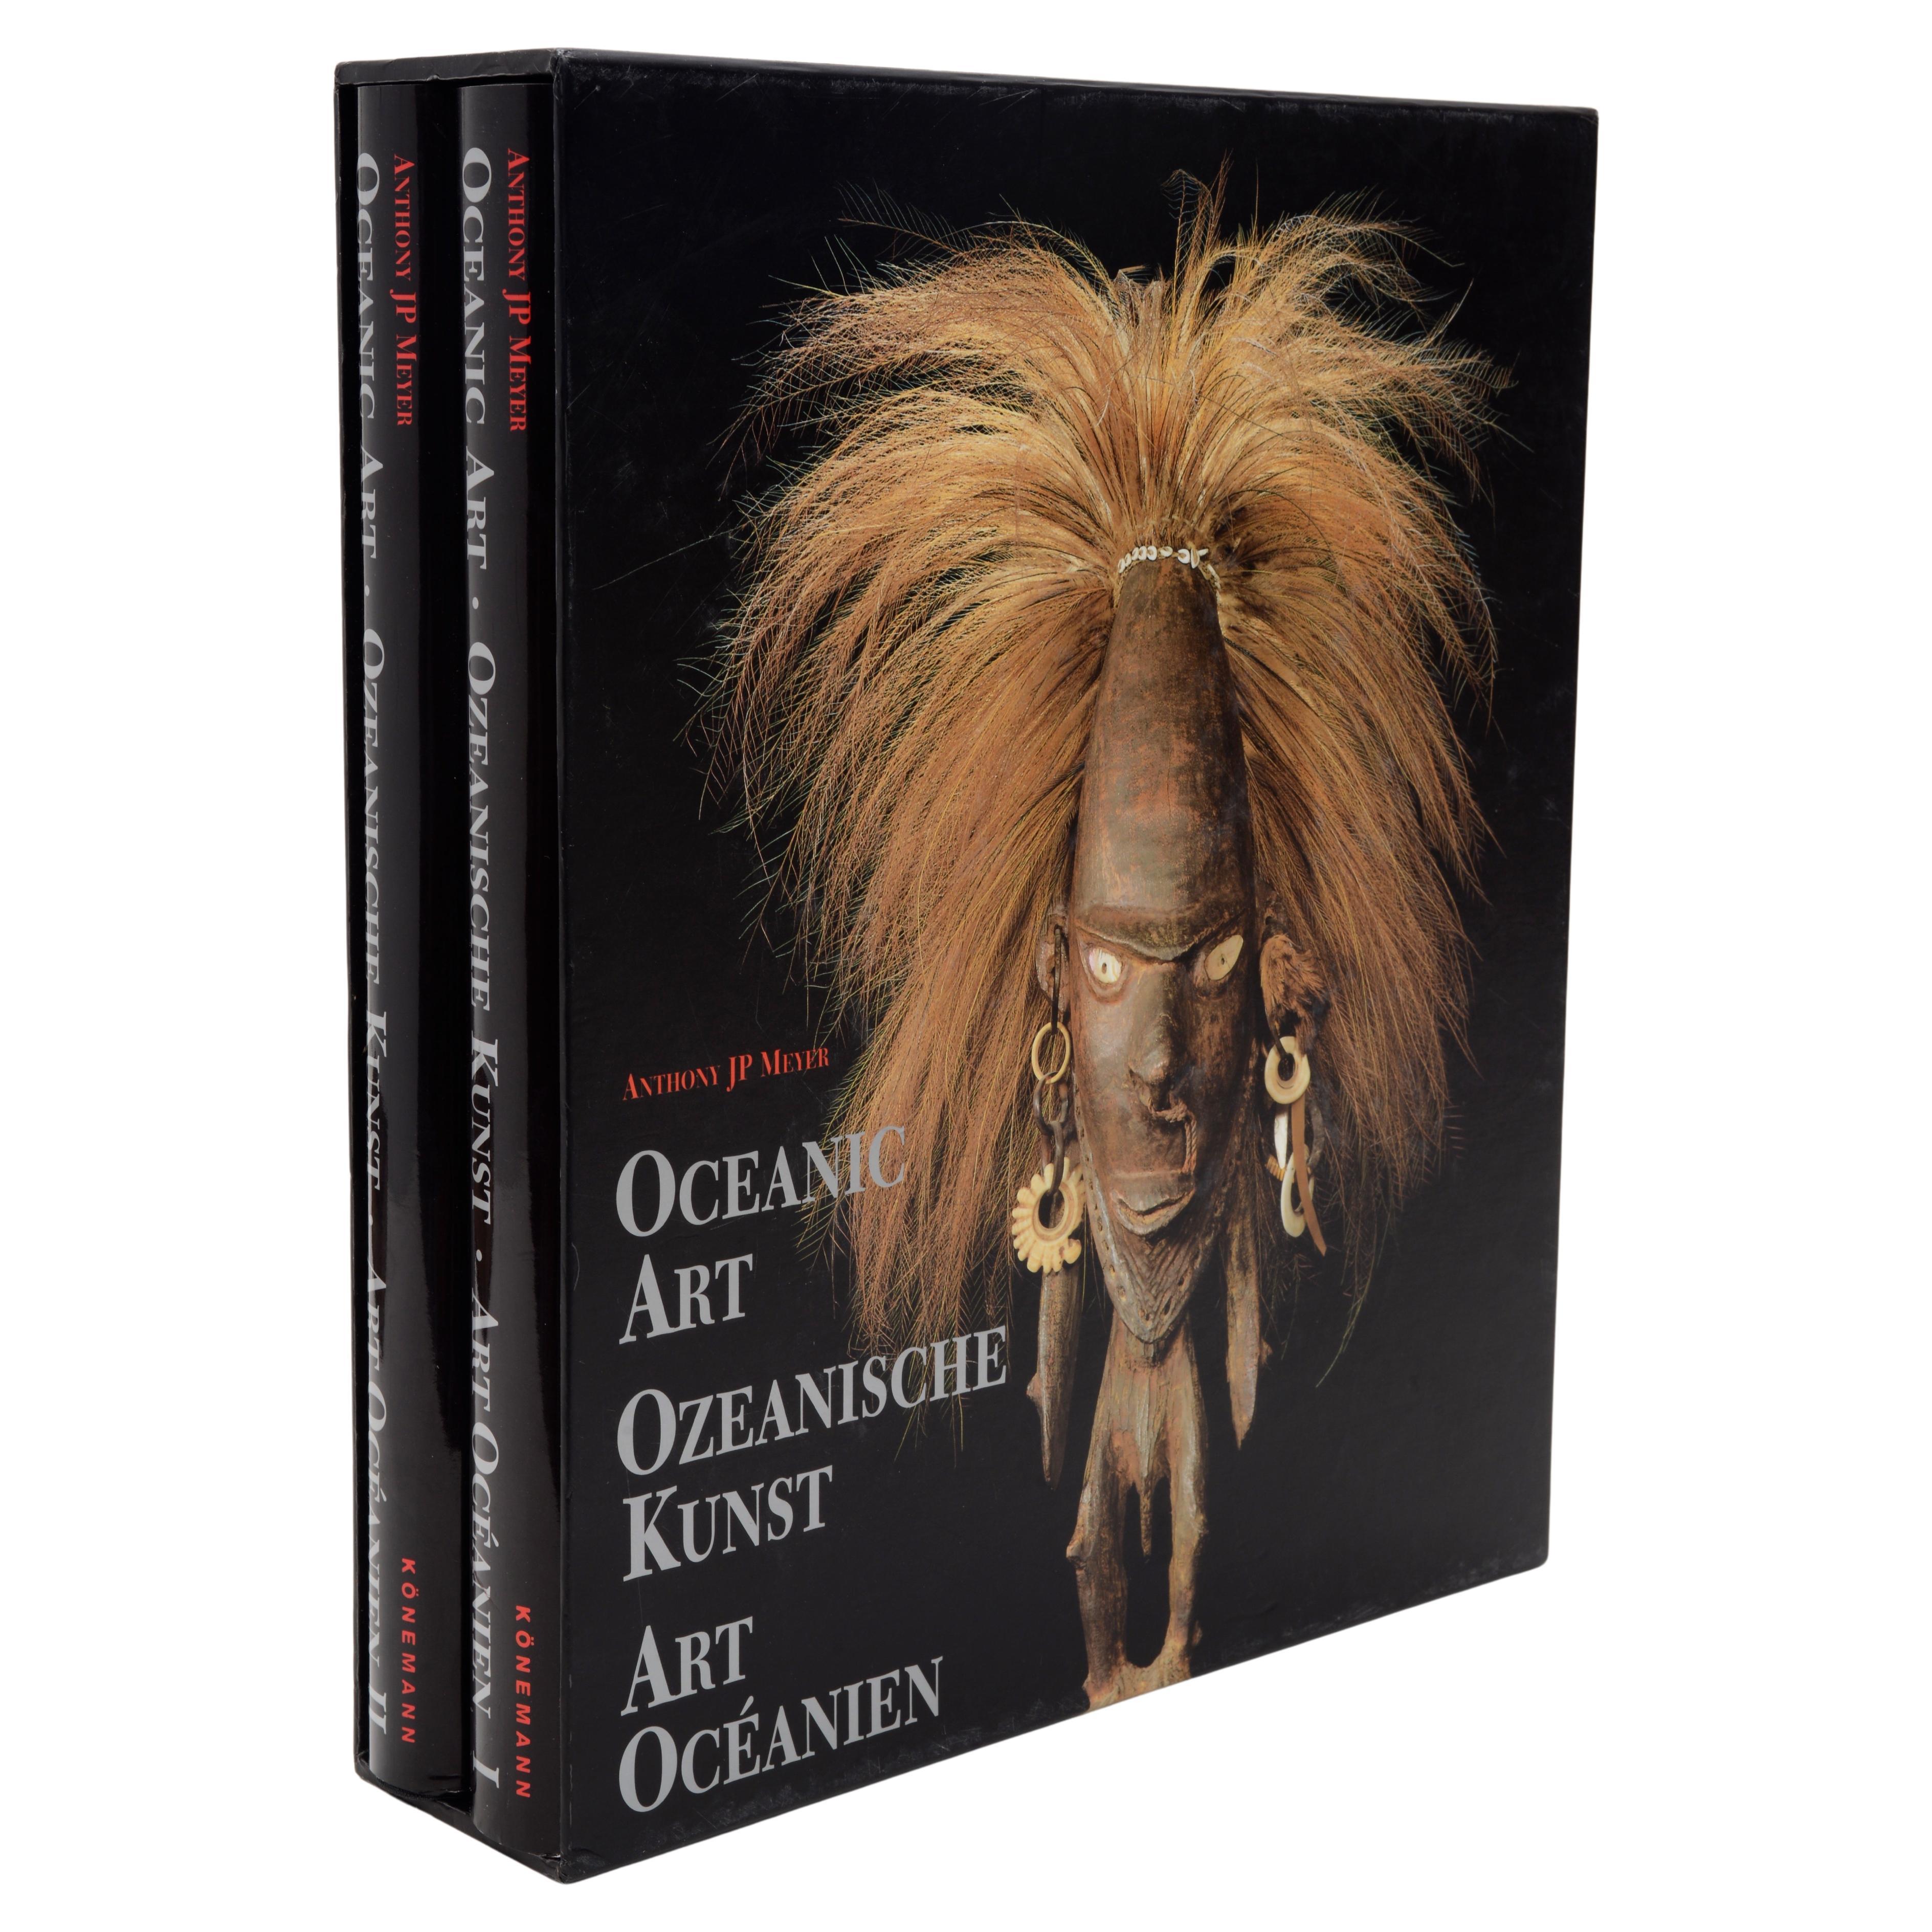 Ozeanische Kunst, 2er- Vol.-Set von Anthony J.P. Meyer, 1. S. in Englisch, Französisch und Deutsch